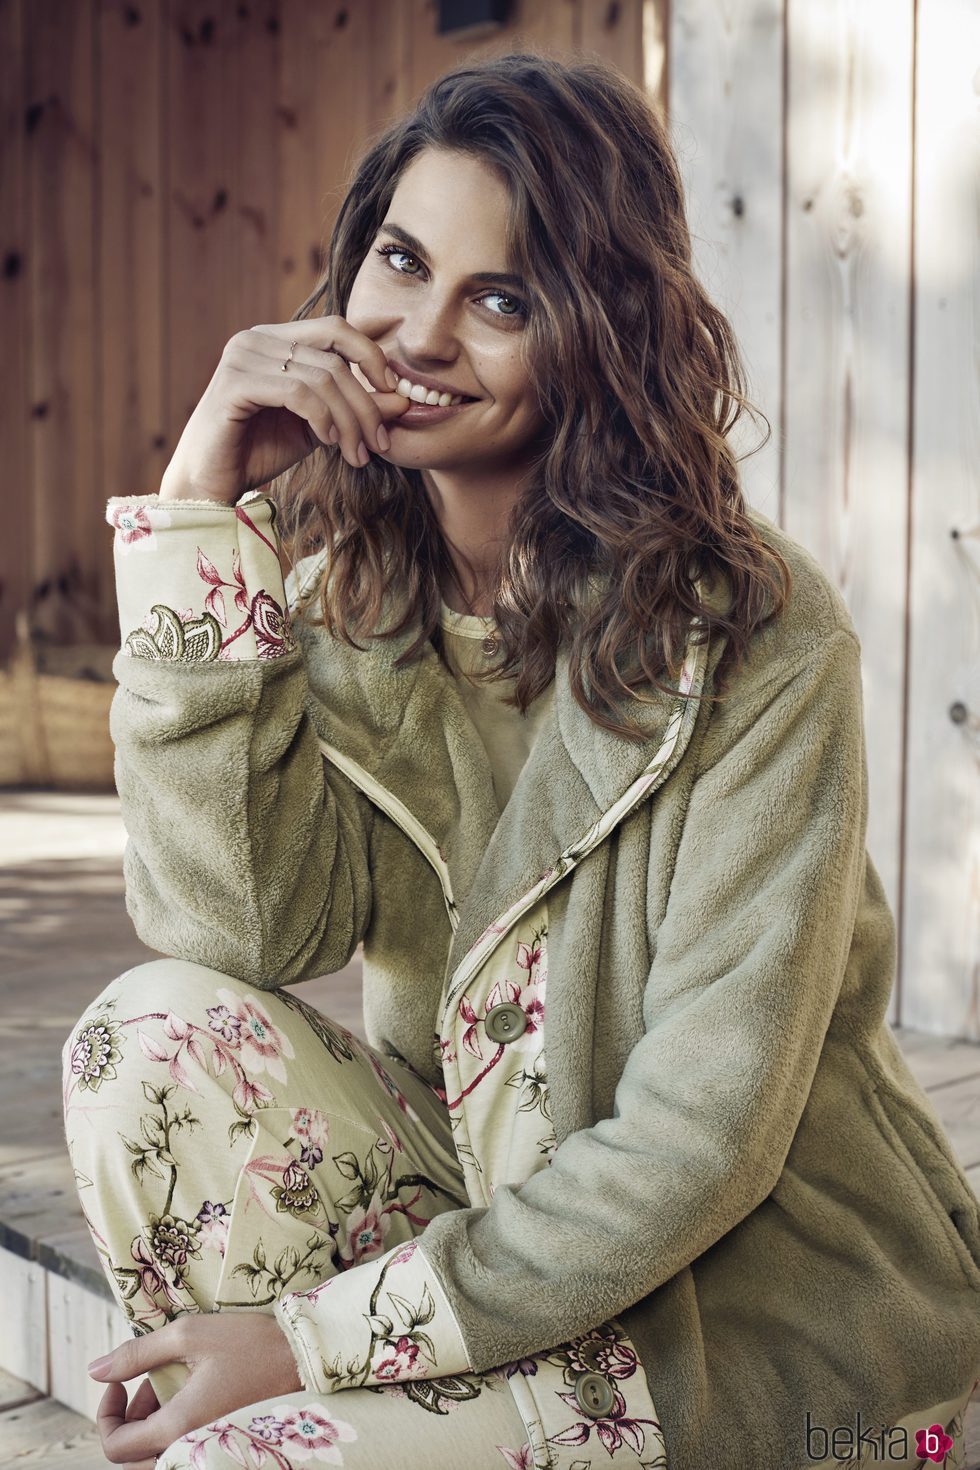 Pijama con chaqueta de Promise de la colección 'Pijama Party' para este invierno